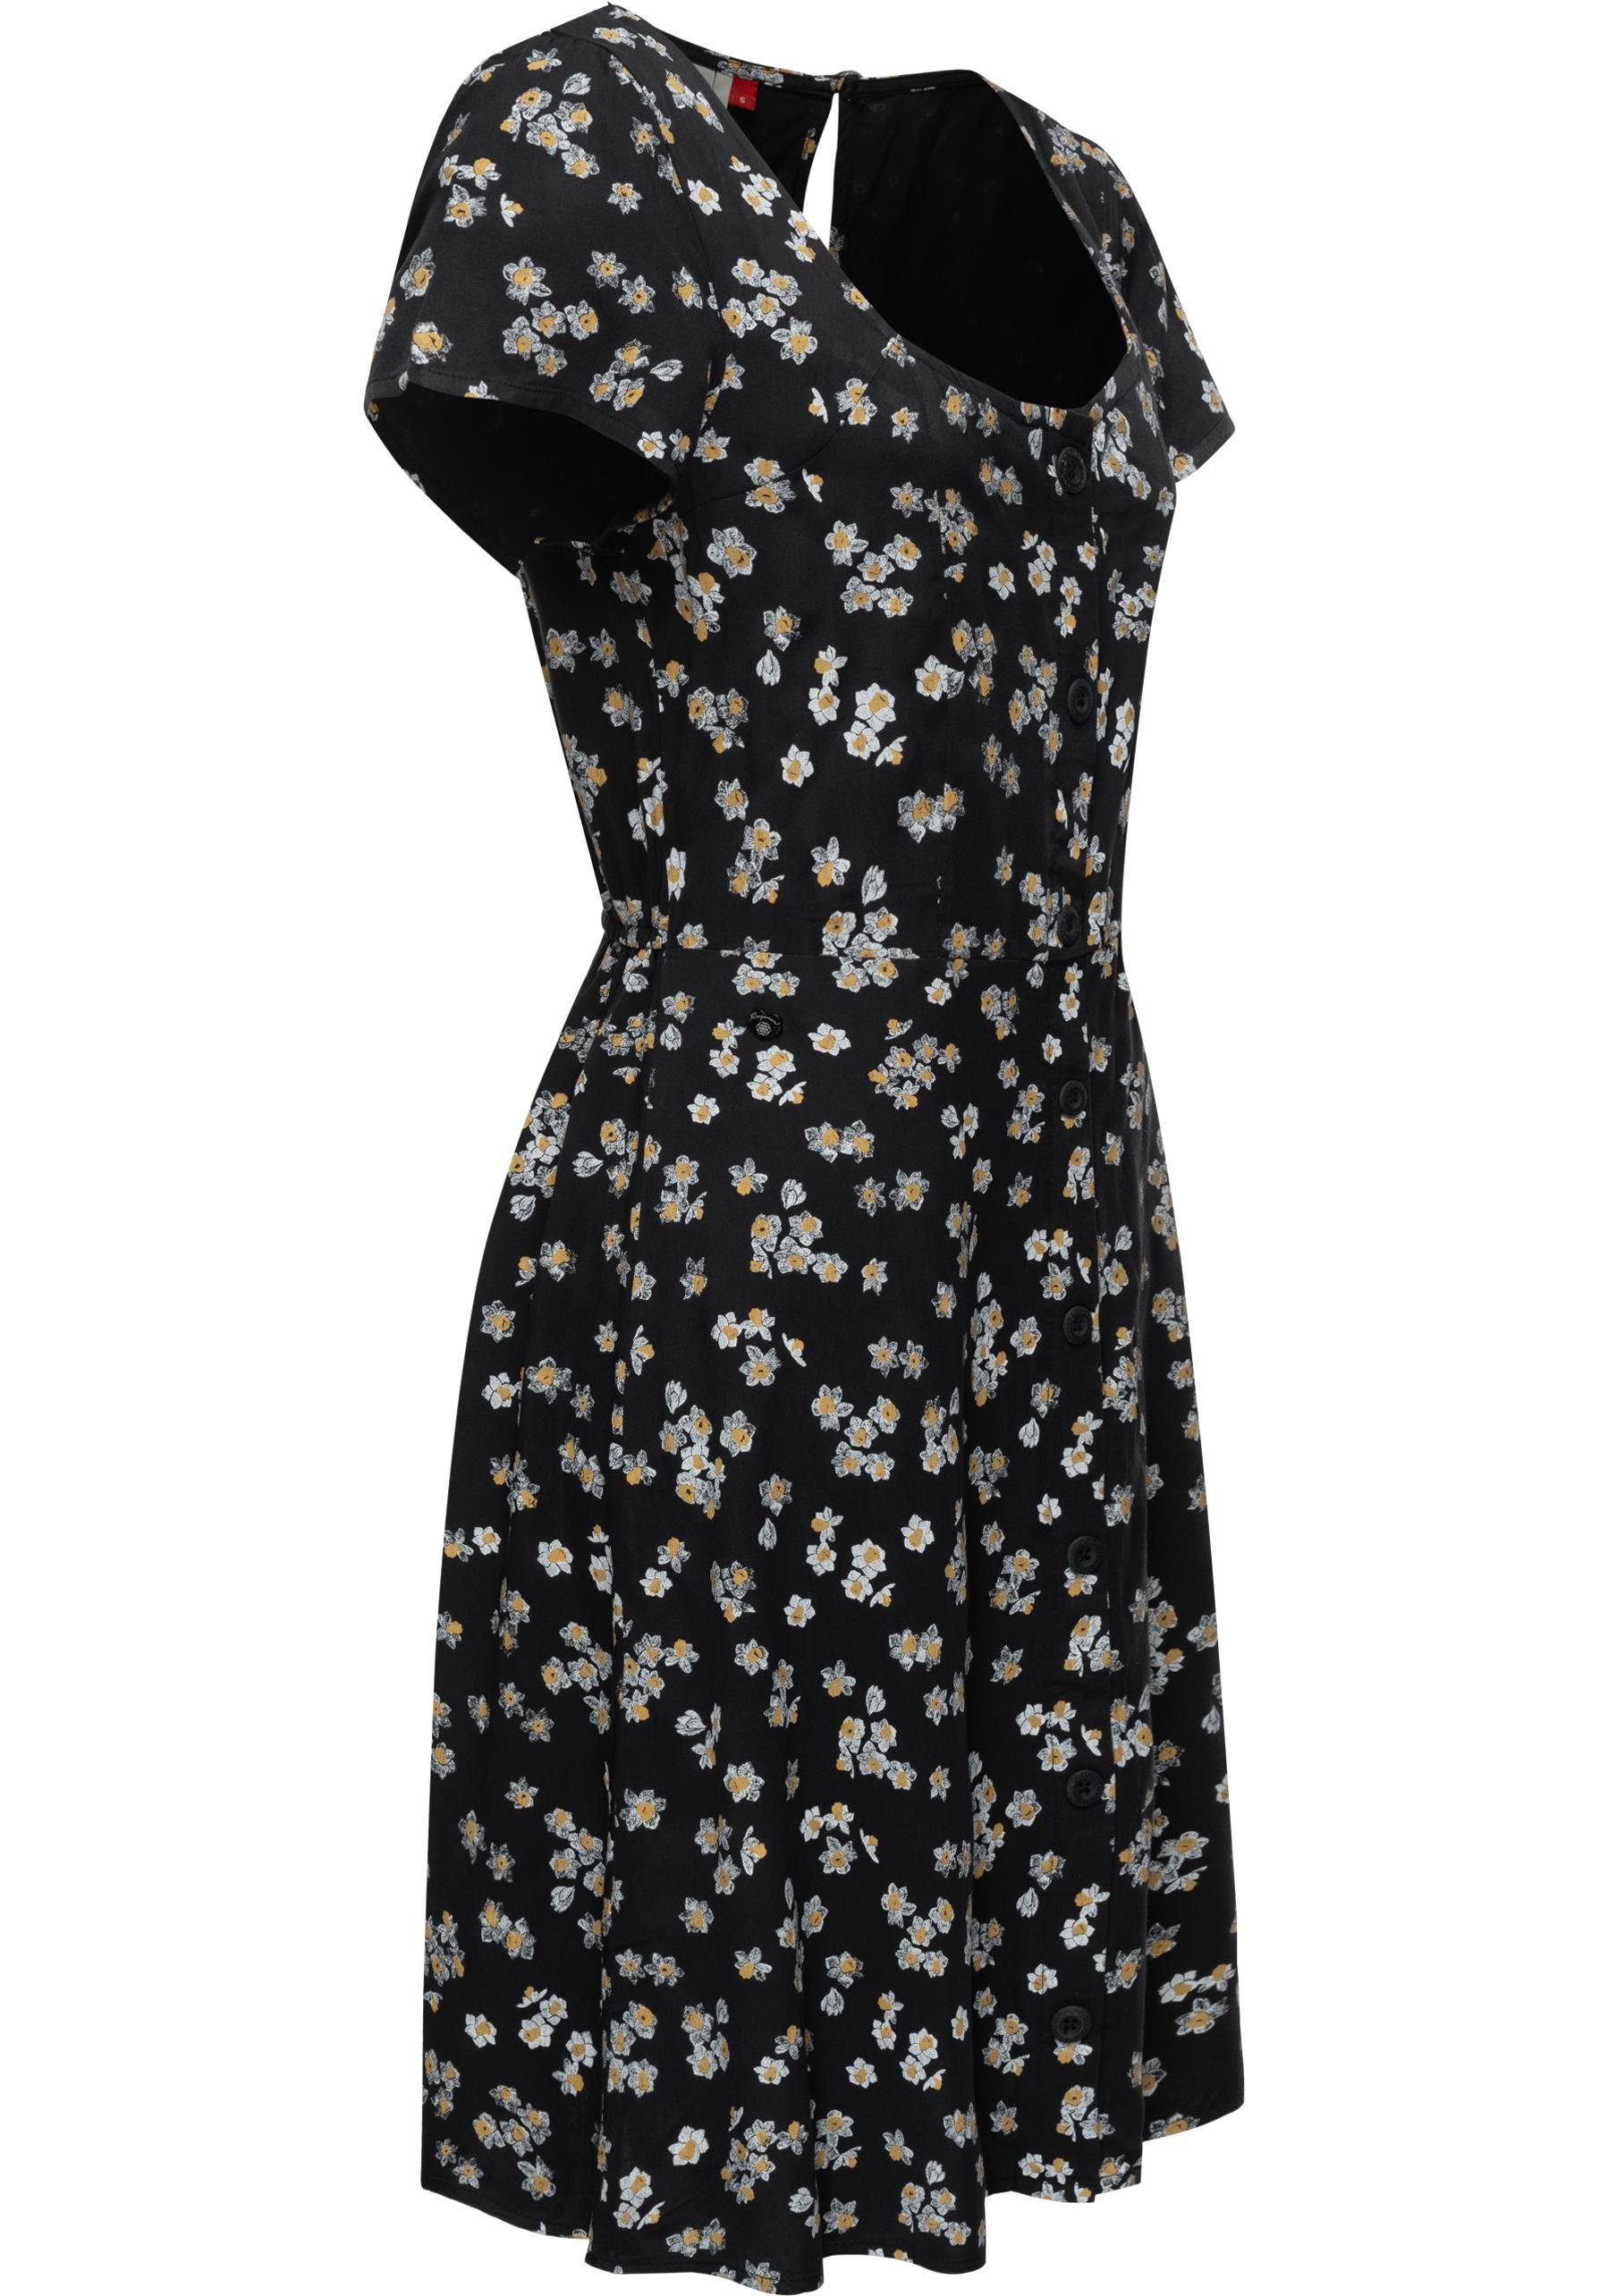 Sommerkleid mit Allover Print Ragwear stylisches Blusenkleid Anerley schwarz